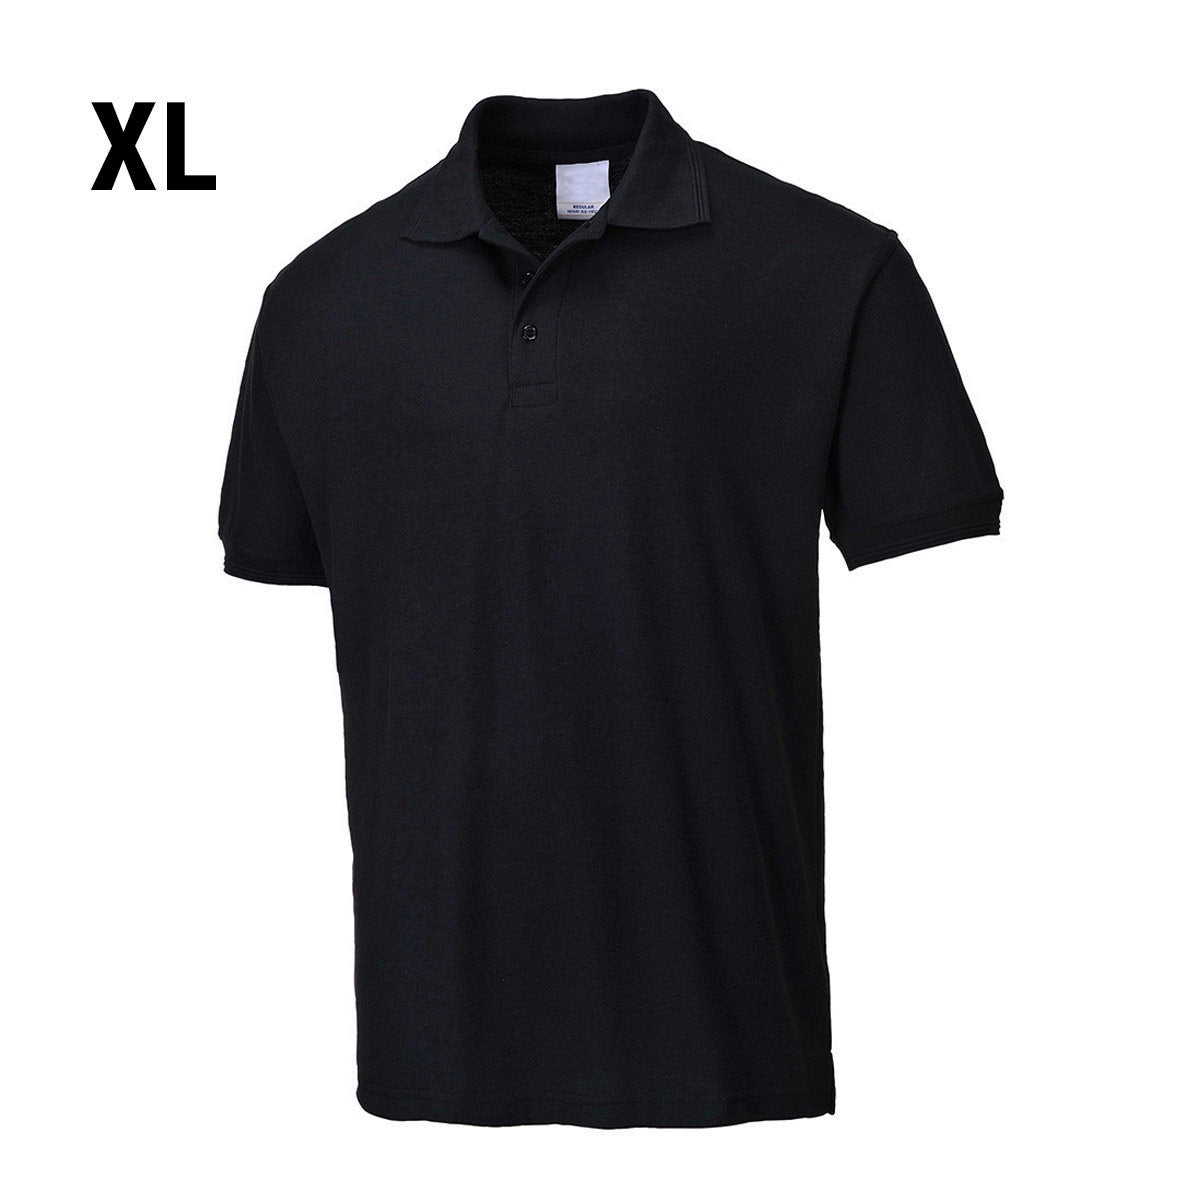 Poloskjorte for menn - Svart - Størrelse: XL